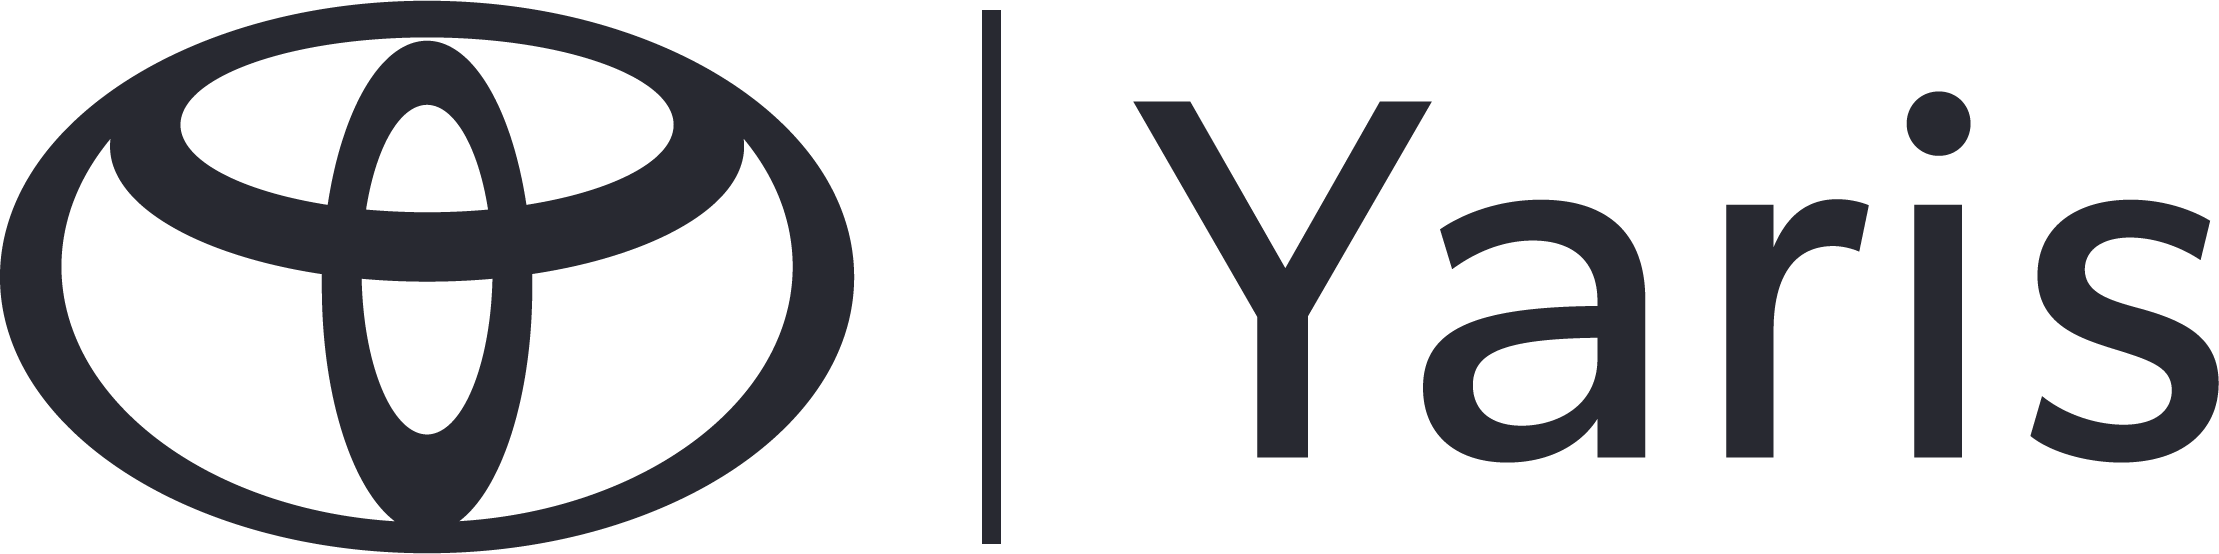 Logo toyota yaris